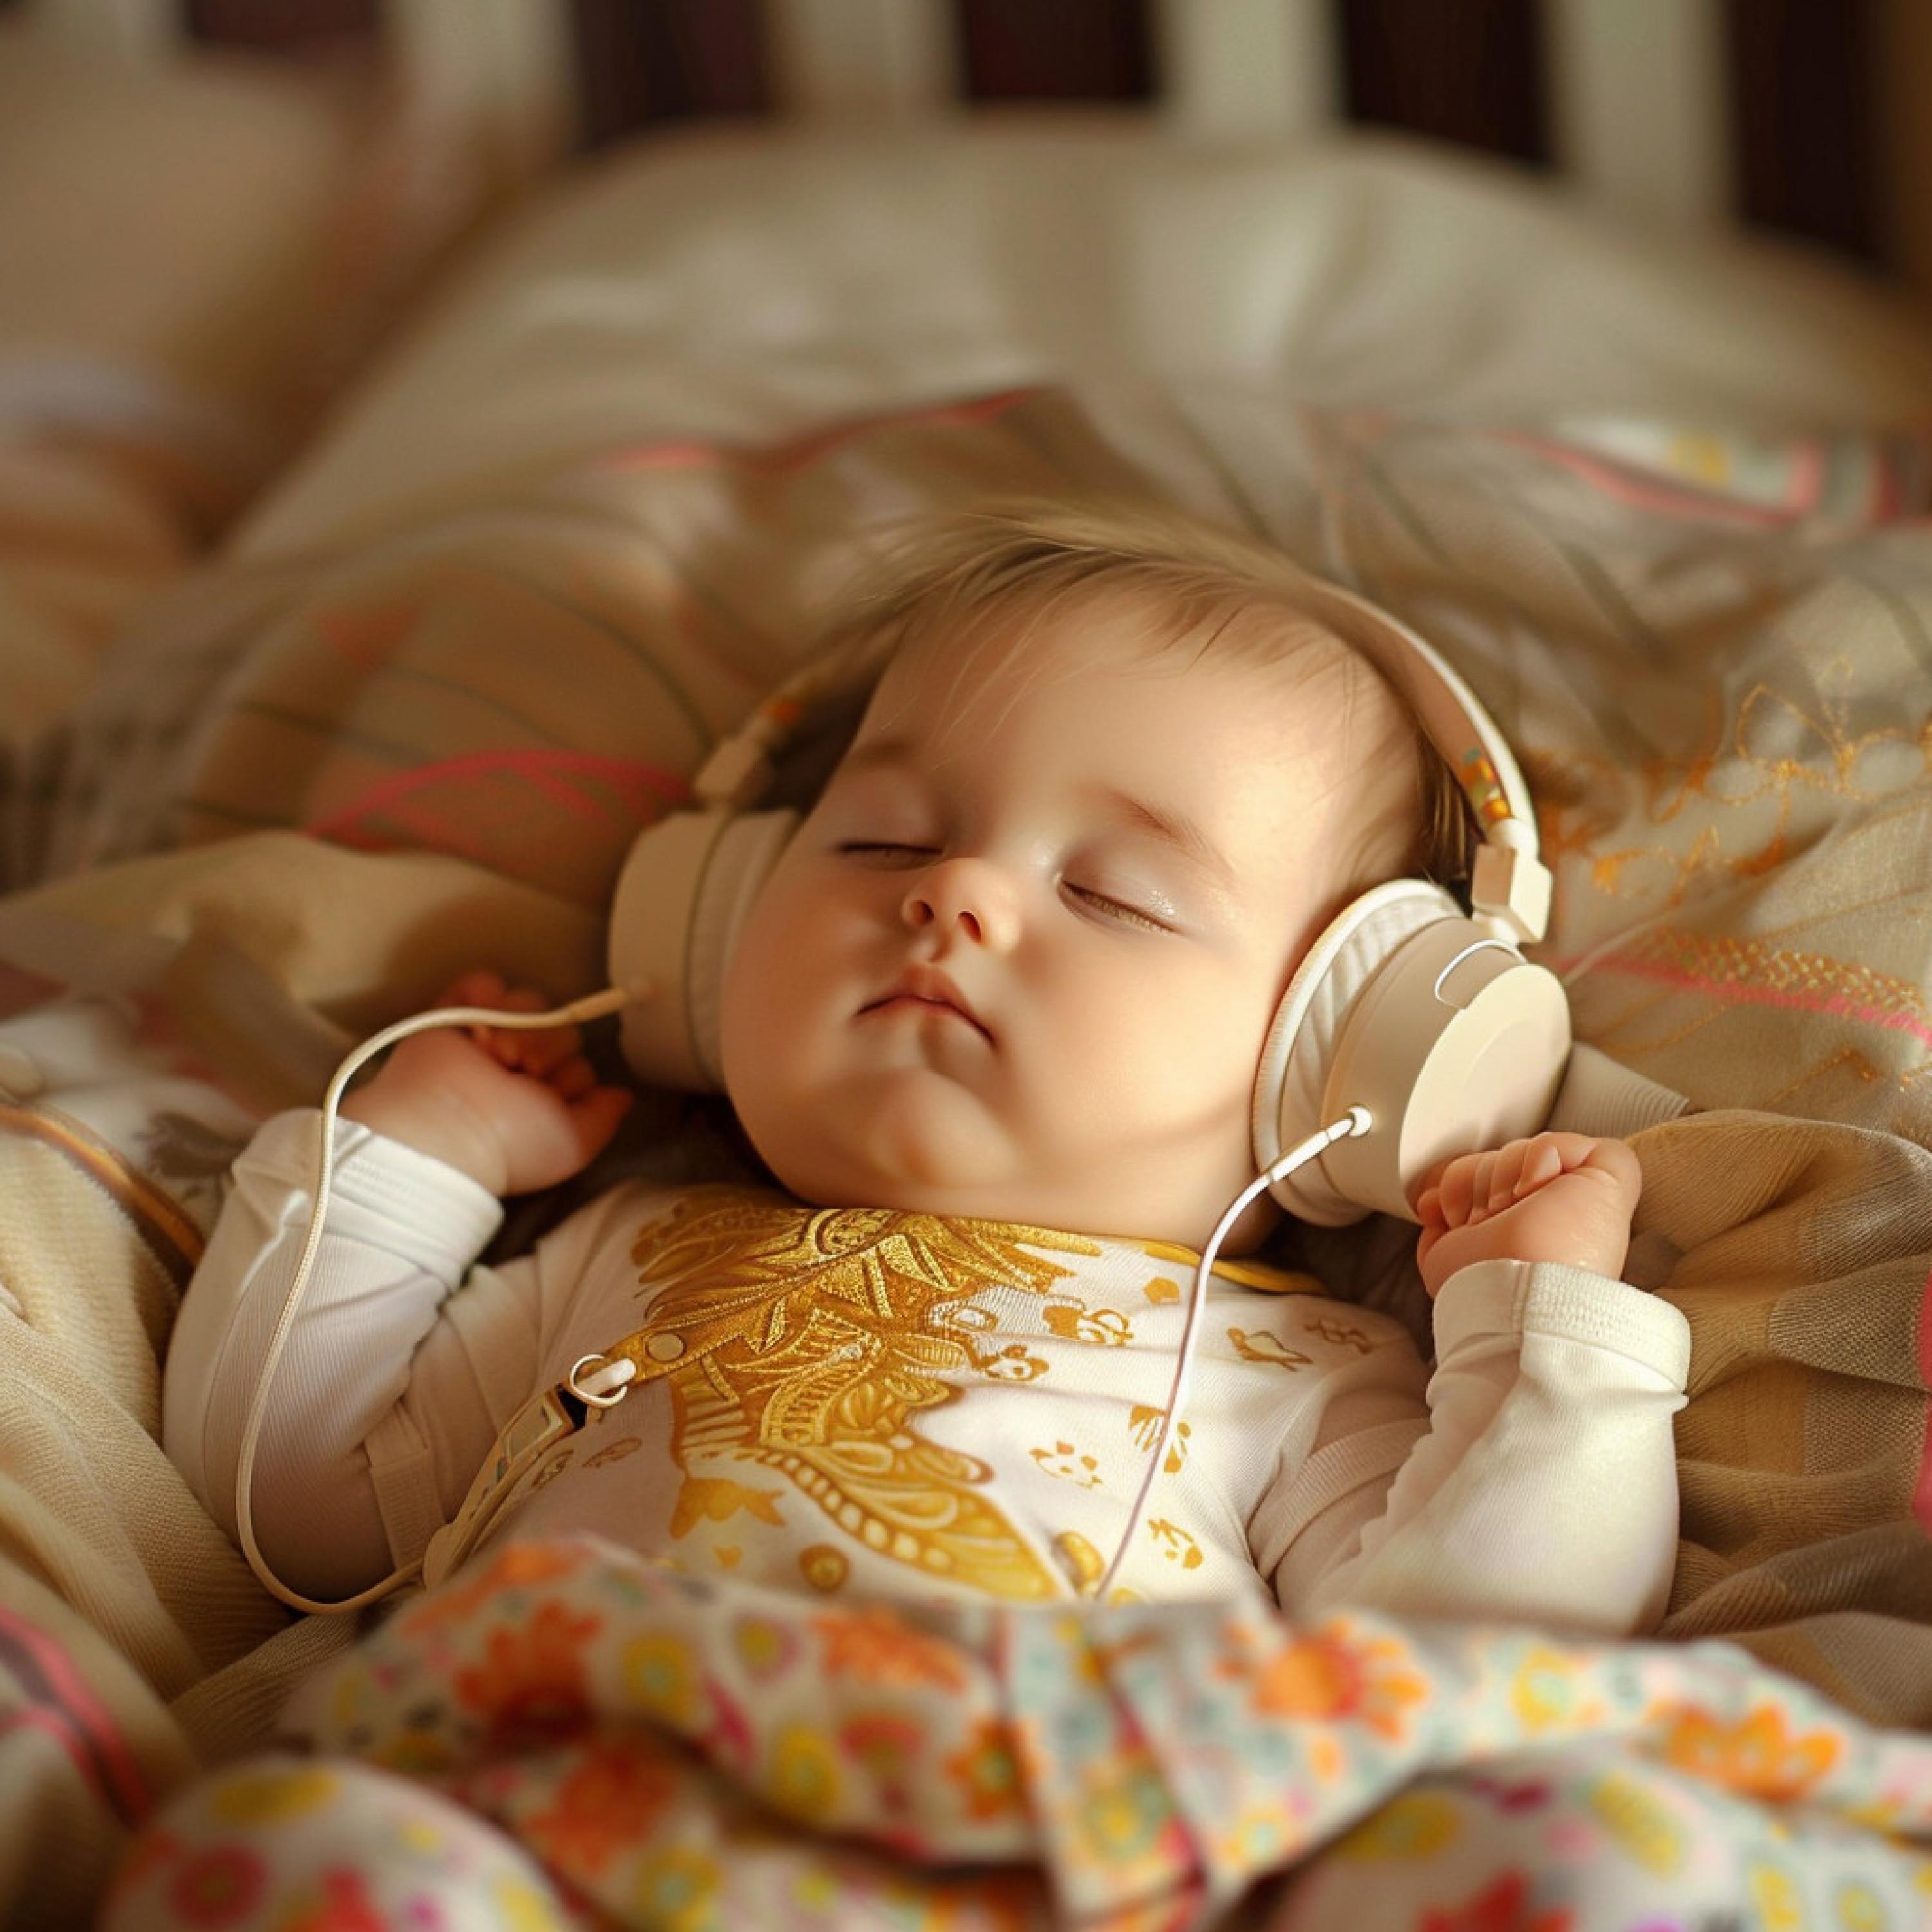 Gentle Music for Babies - Soothing Sleep Rhythms